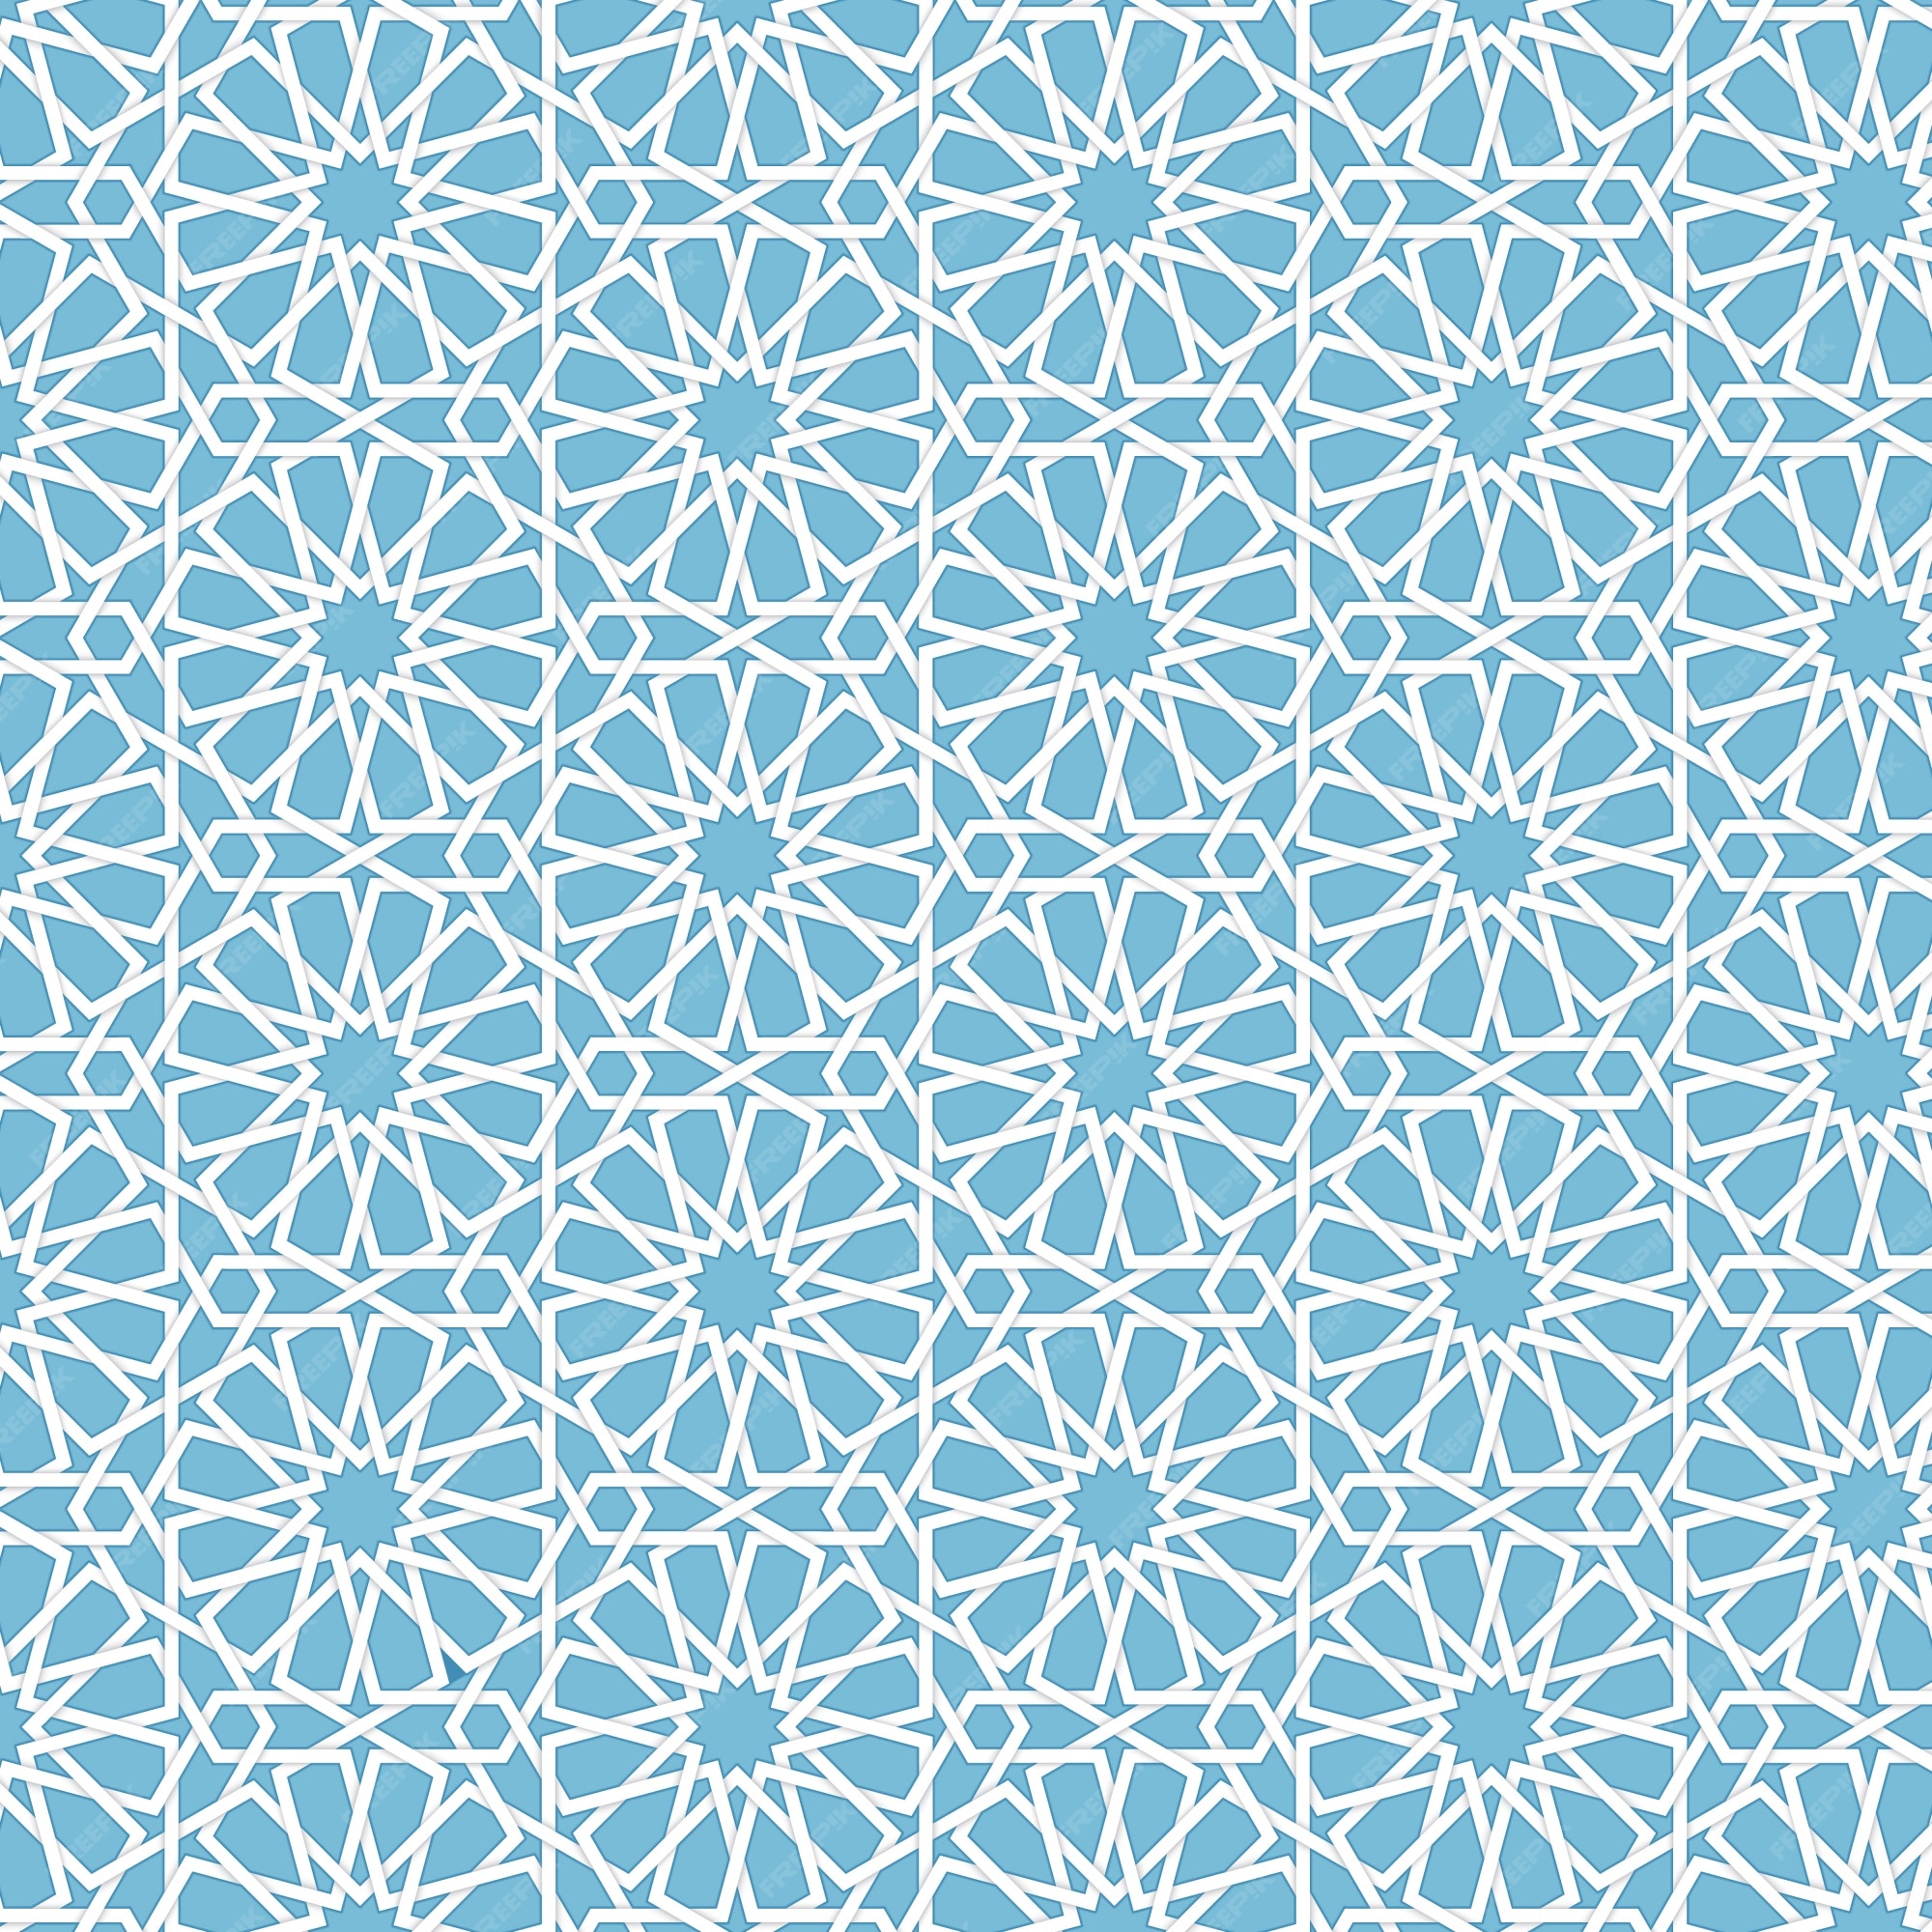 Bạn đang tìm kiếm những mẫu họa tiết Hồi Giáo đẹp và miễn phí? Tải ngay các vector đầy màu sắc trên Freepik và trang trí cho thiết kế của mình thêm phần sinh động. Với những hình ảnh độc đáo này, bạn chắc chắn sẽ không bị nhàm chán.